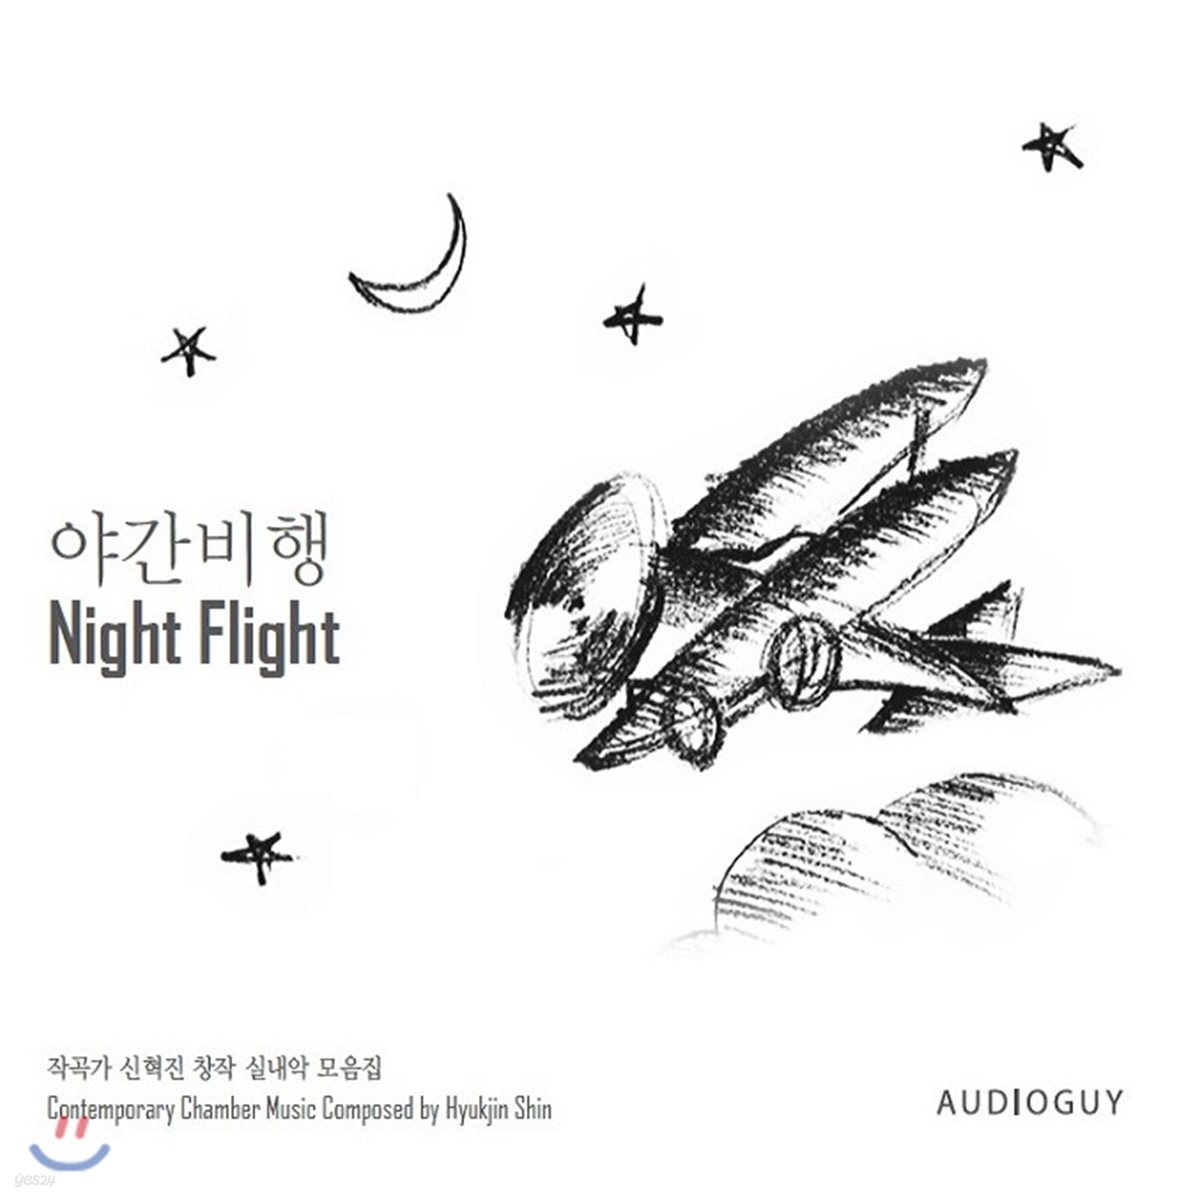 신혁진 - 야간비행 (Night Flight) [생텍쥬페리의 소설을 음악으로 그린 작품]